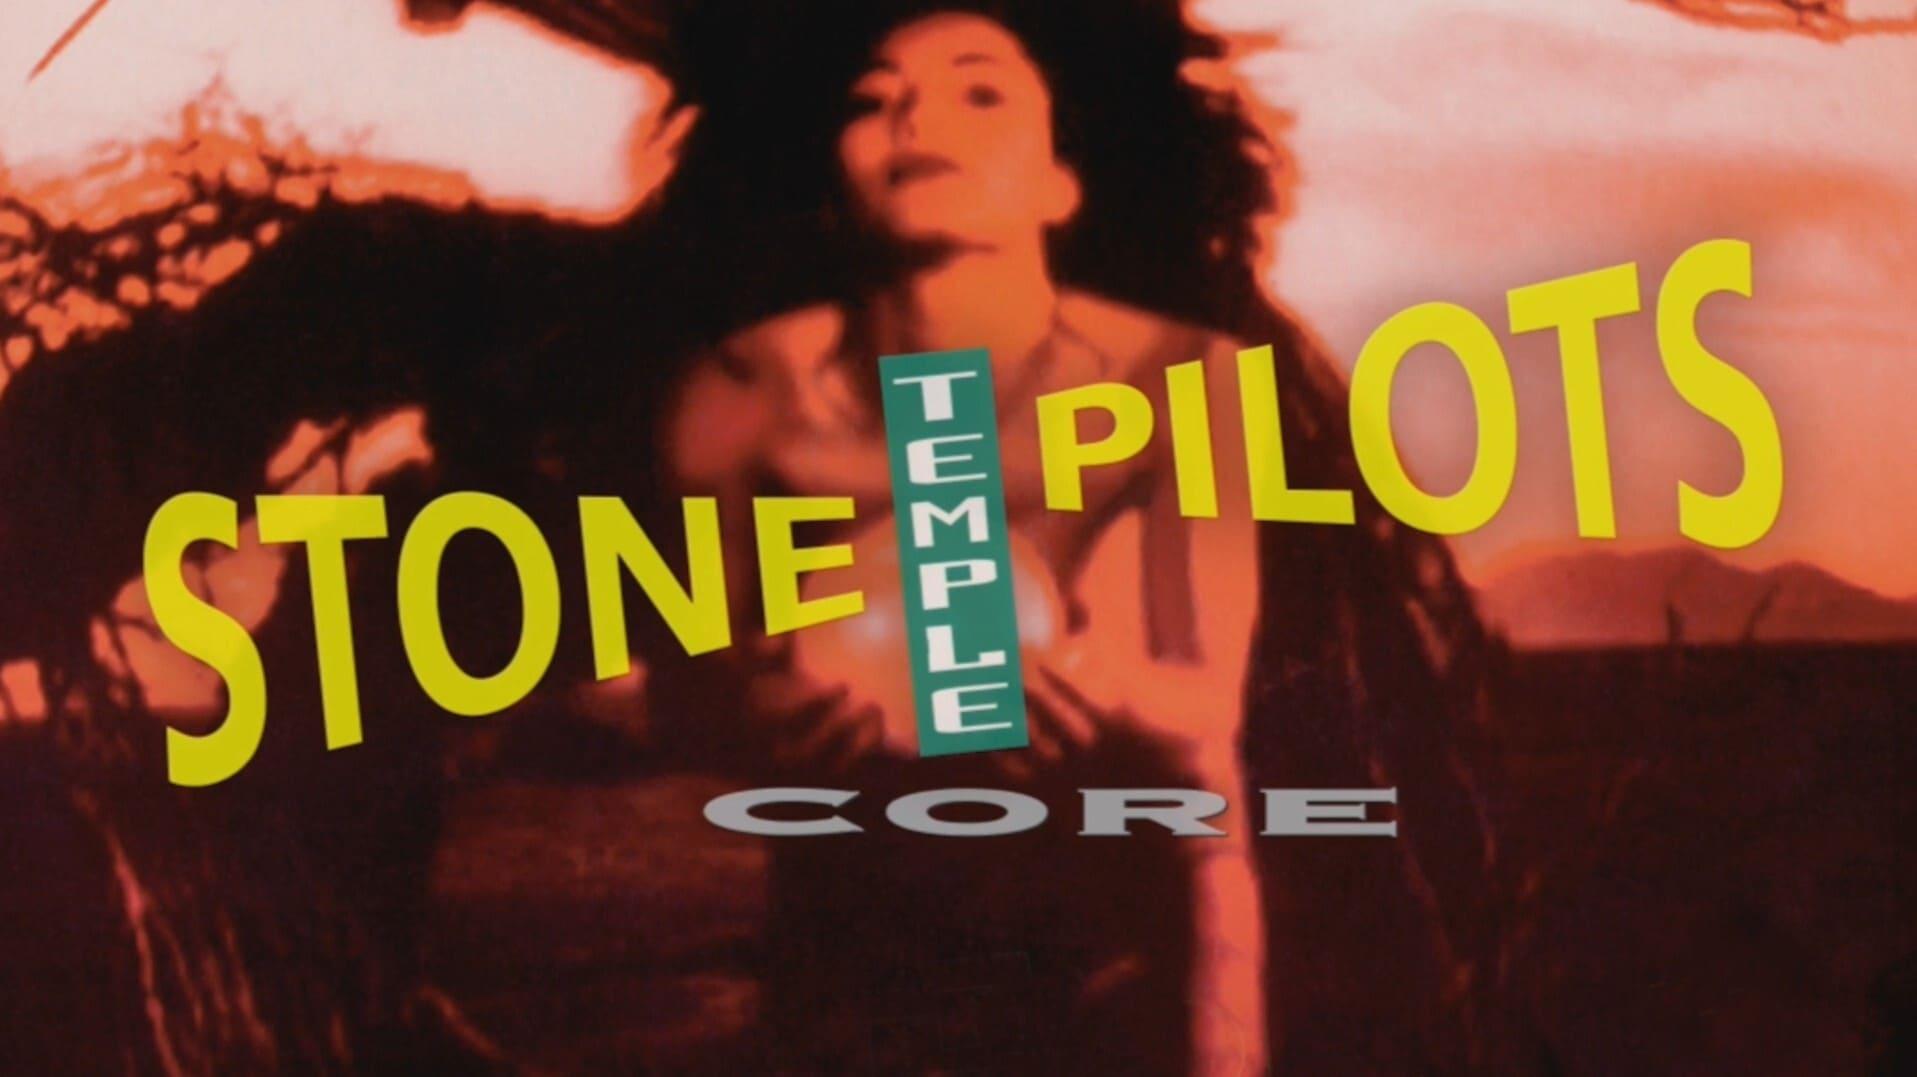 Stone Temple Pilots Core Live Webcast backdrop